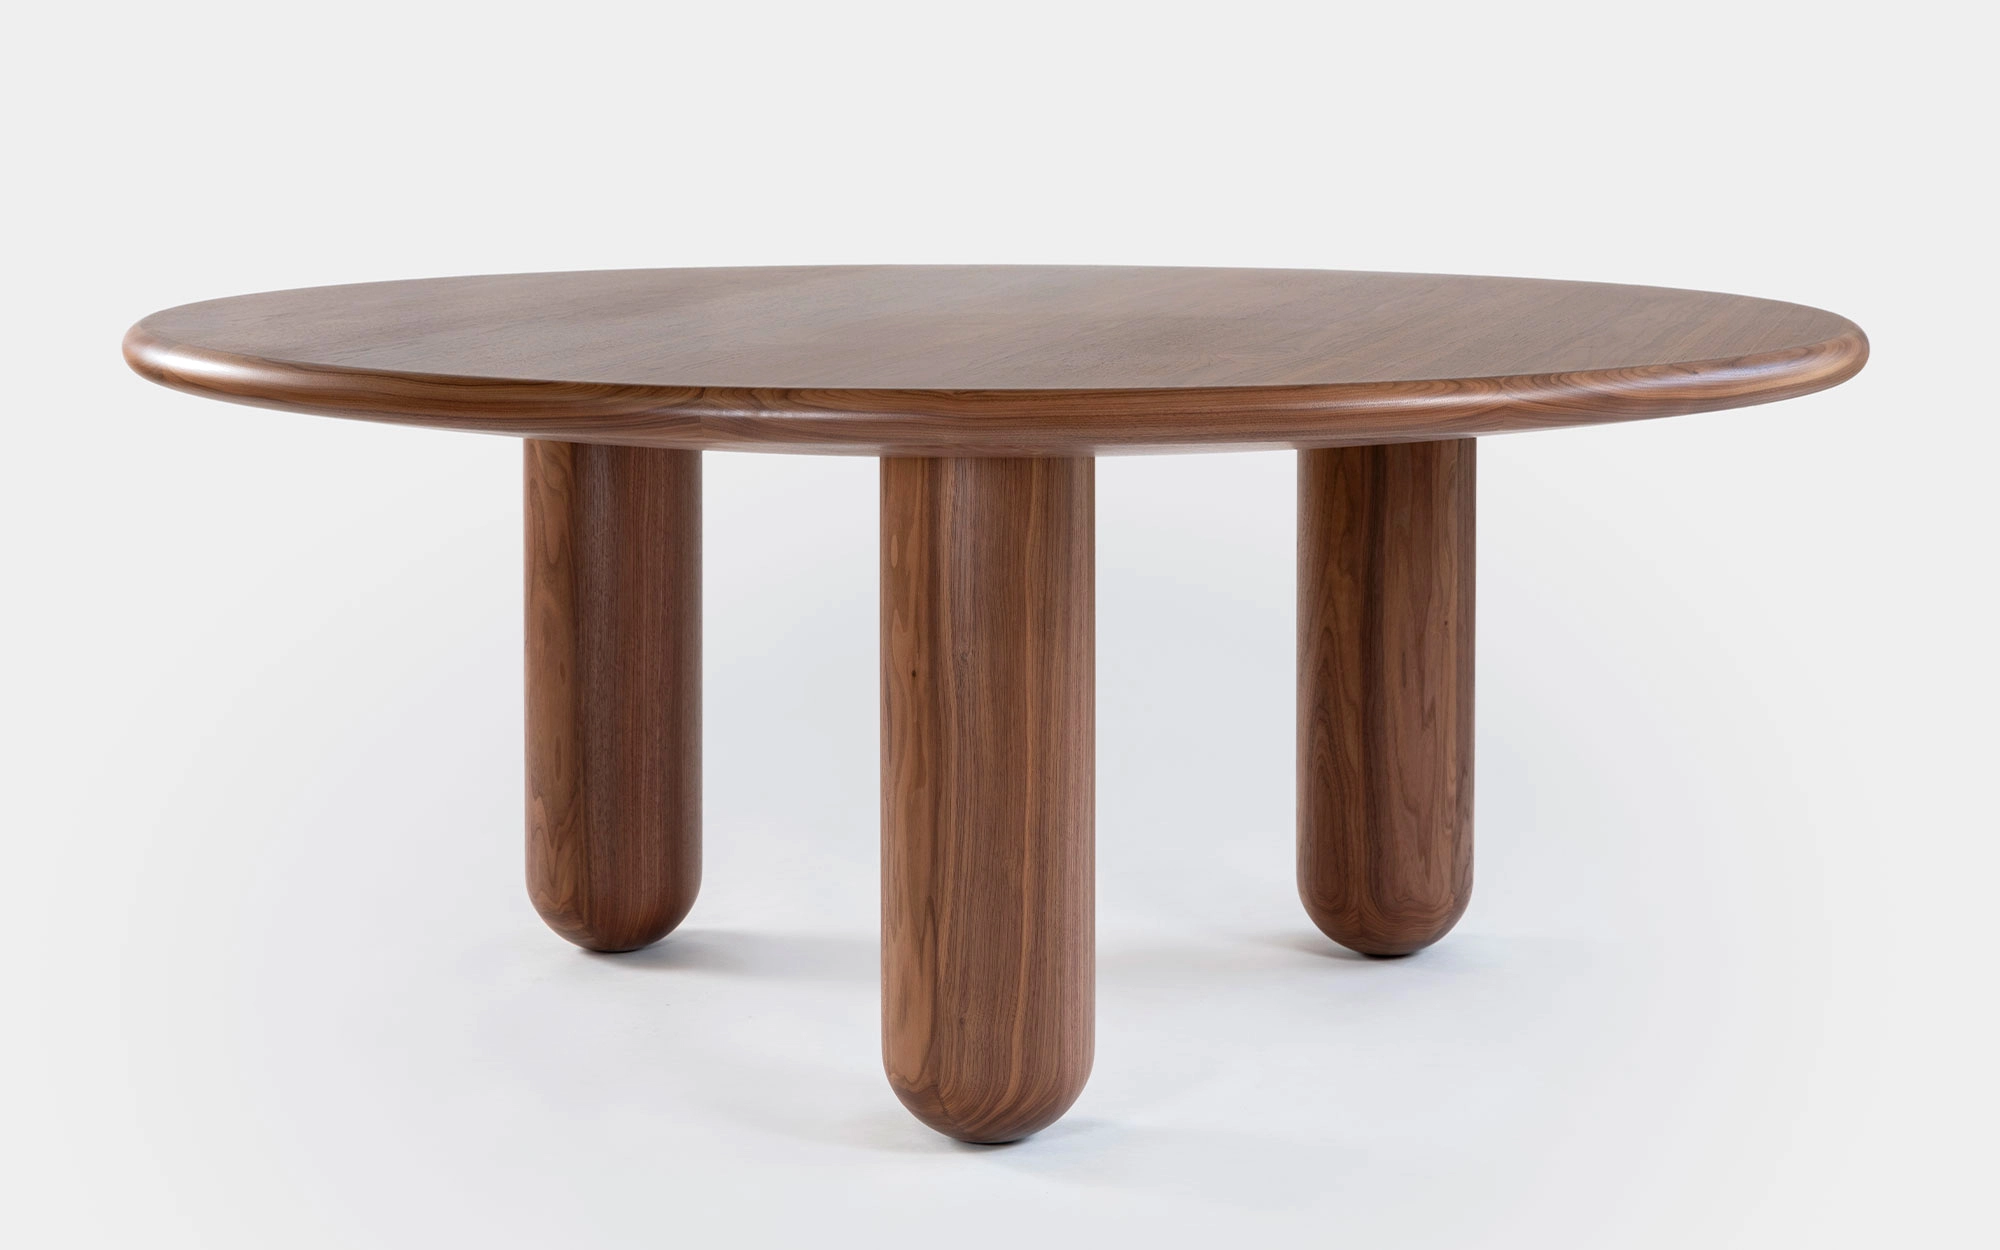 Organism table - Jaime Hayon - Jaime Hayon 'Atelier Wonderland' .